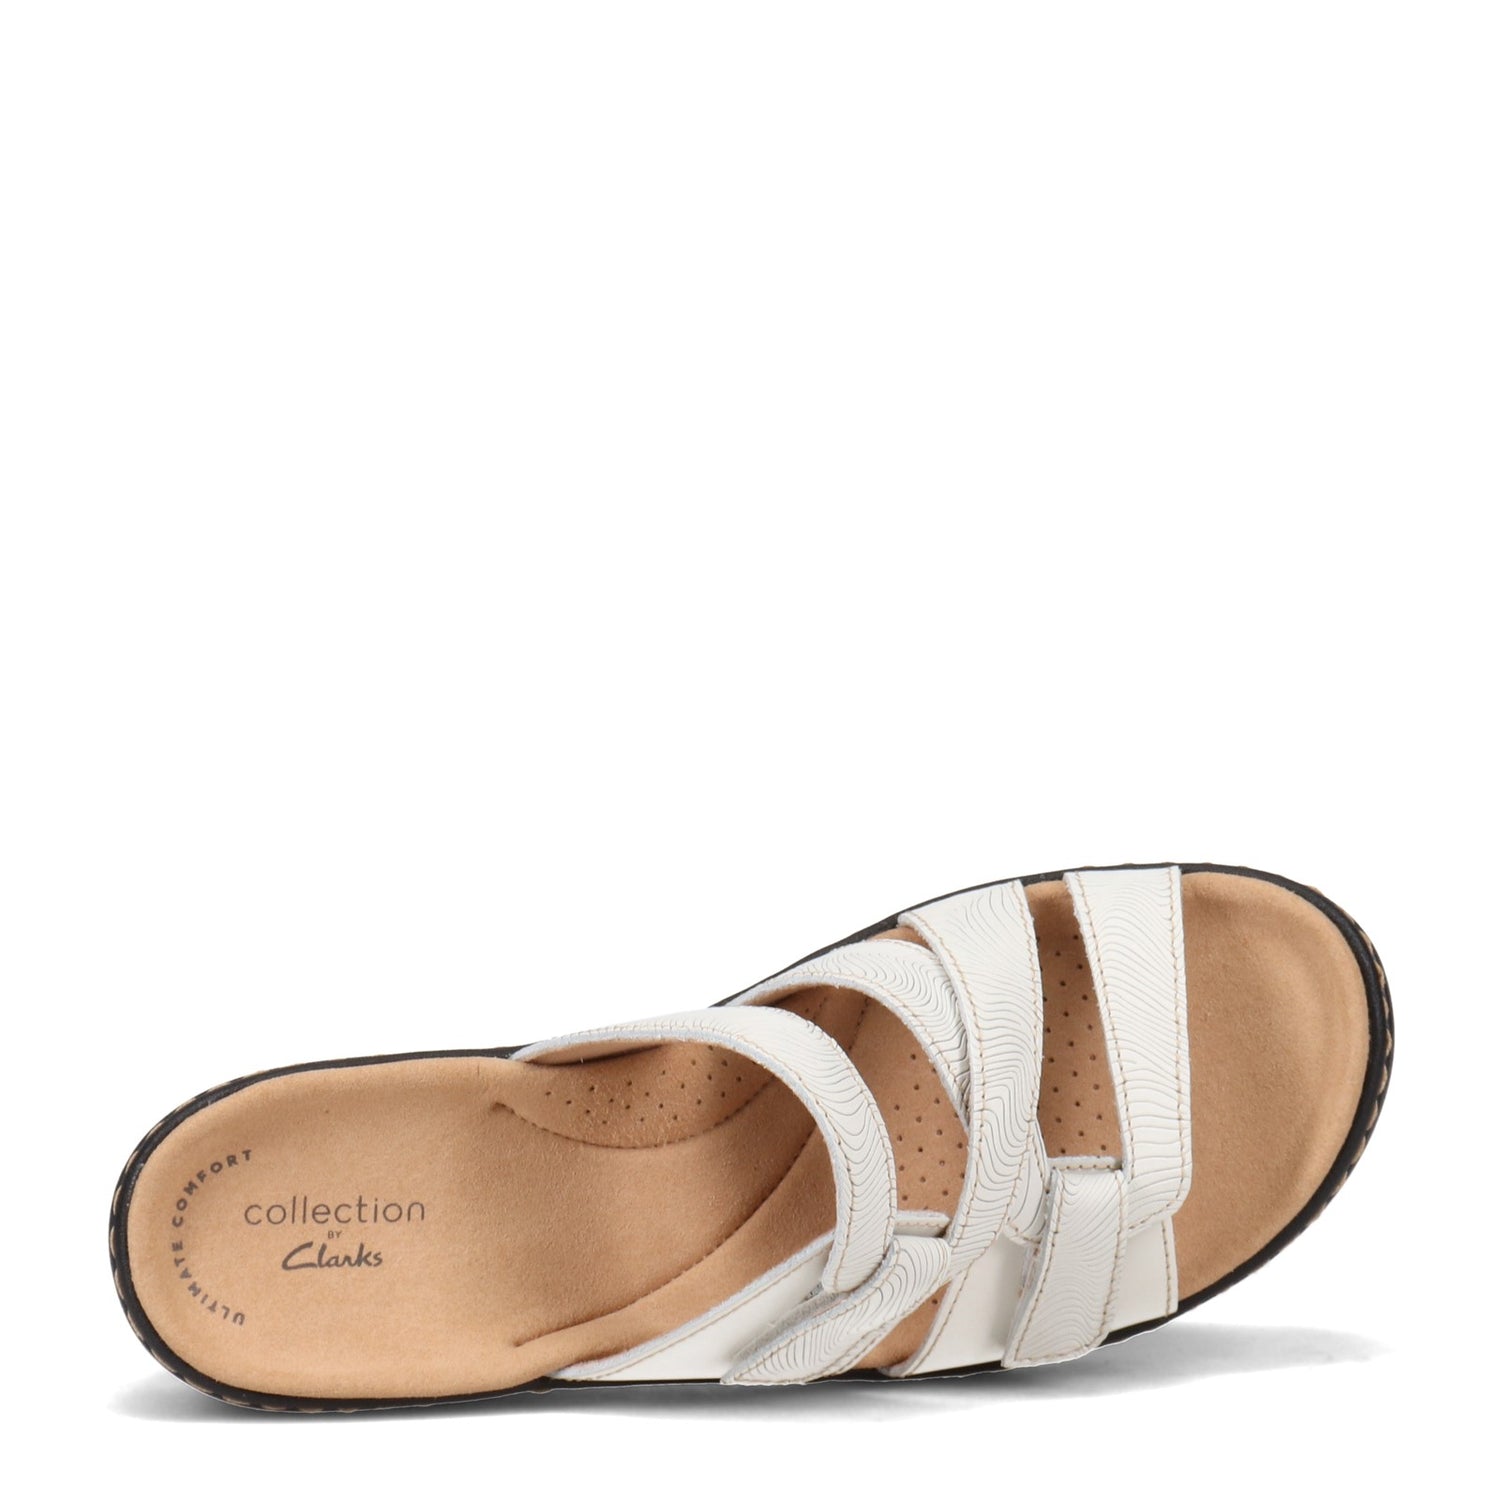 Peltz Shoes  Women's Clarks Merliah Karli Sandal WHITE 26158236